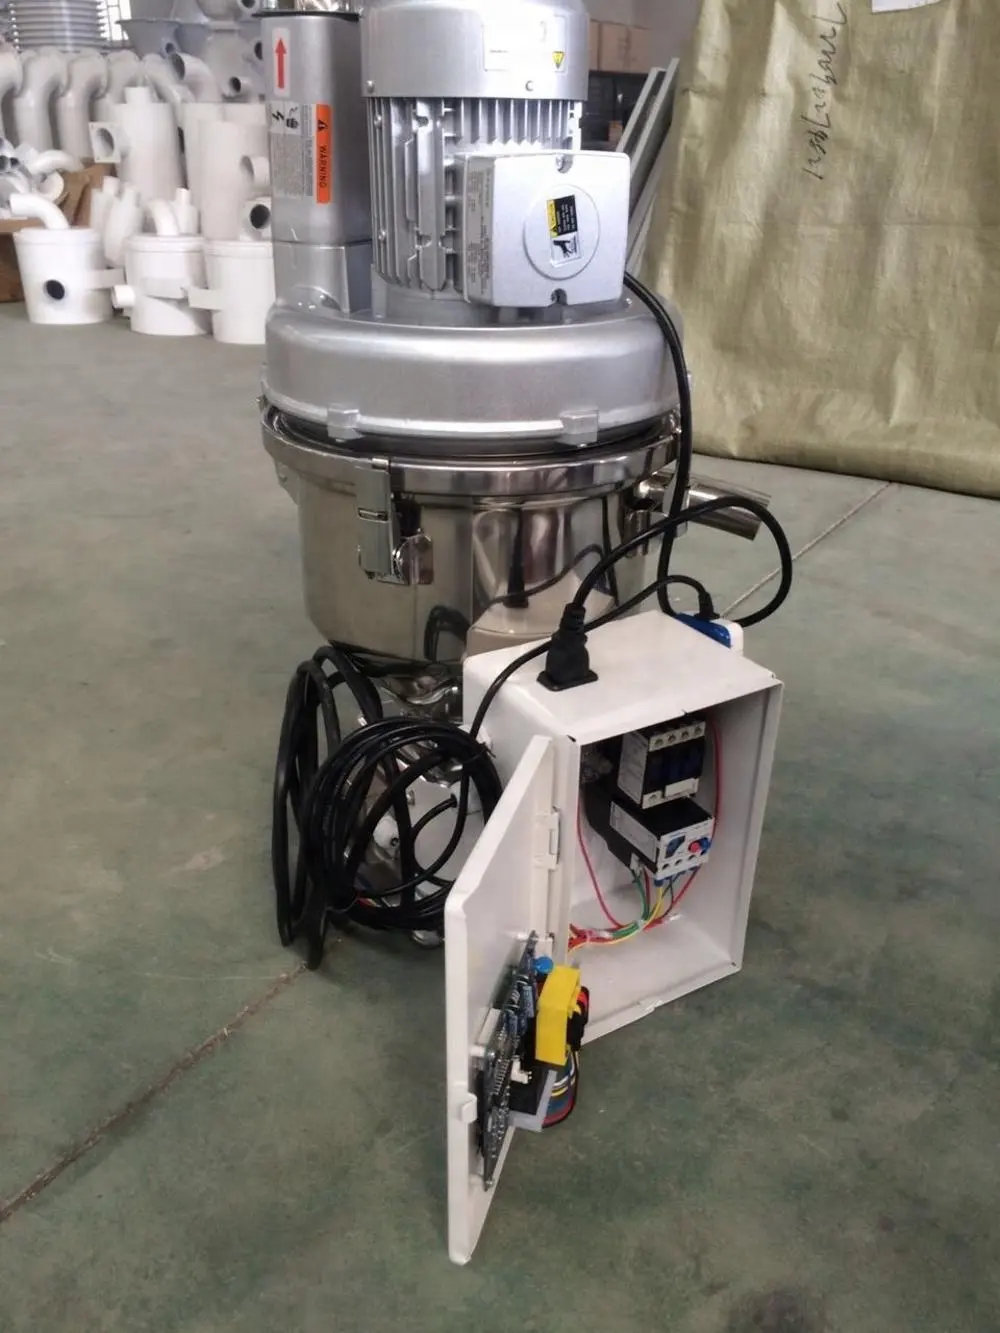 Automatischer Vakuum-Trichter-Feeder-Auto-Lader für Pellets, Kunststoff-Trichter-Minikorn-Vakuum-Pulver-Pellet-Lader